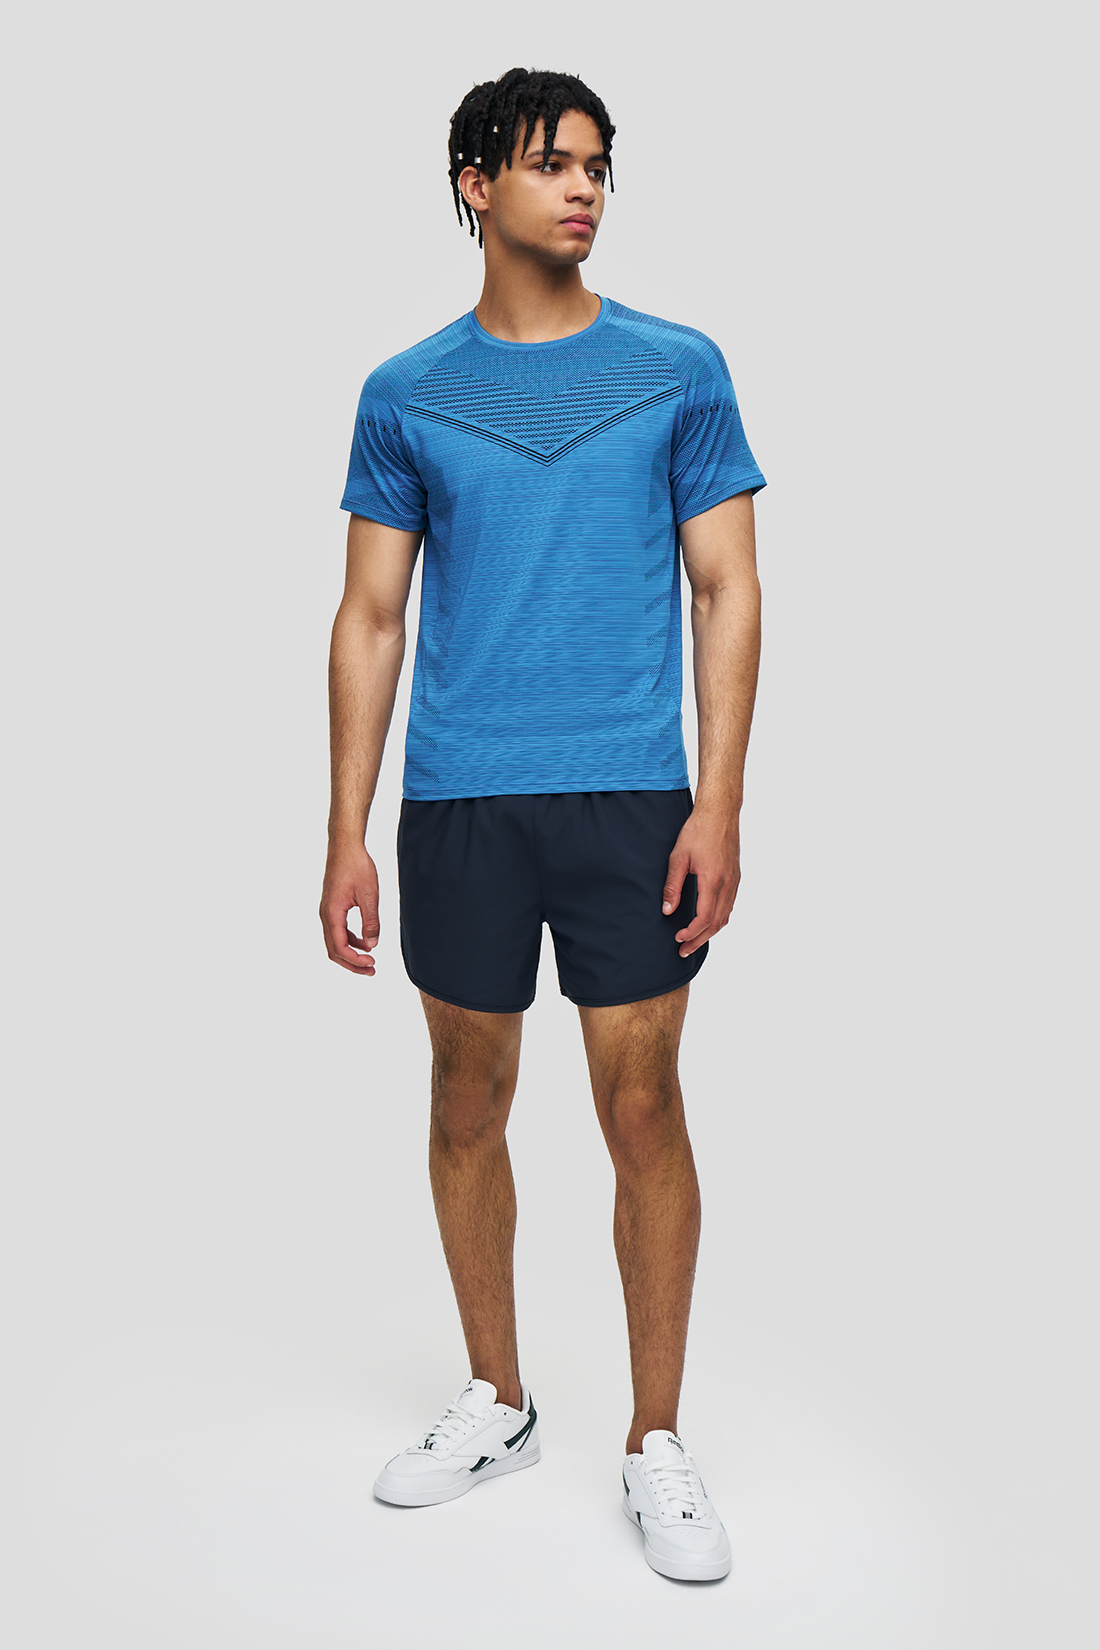 Спортивные шорты мужские Baon B8223020 синие S